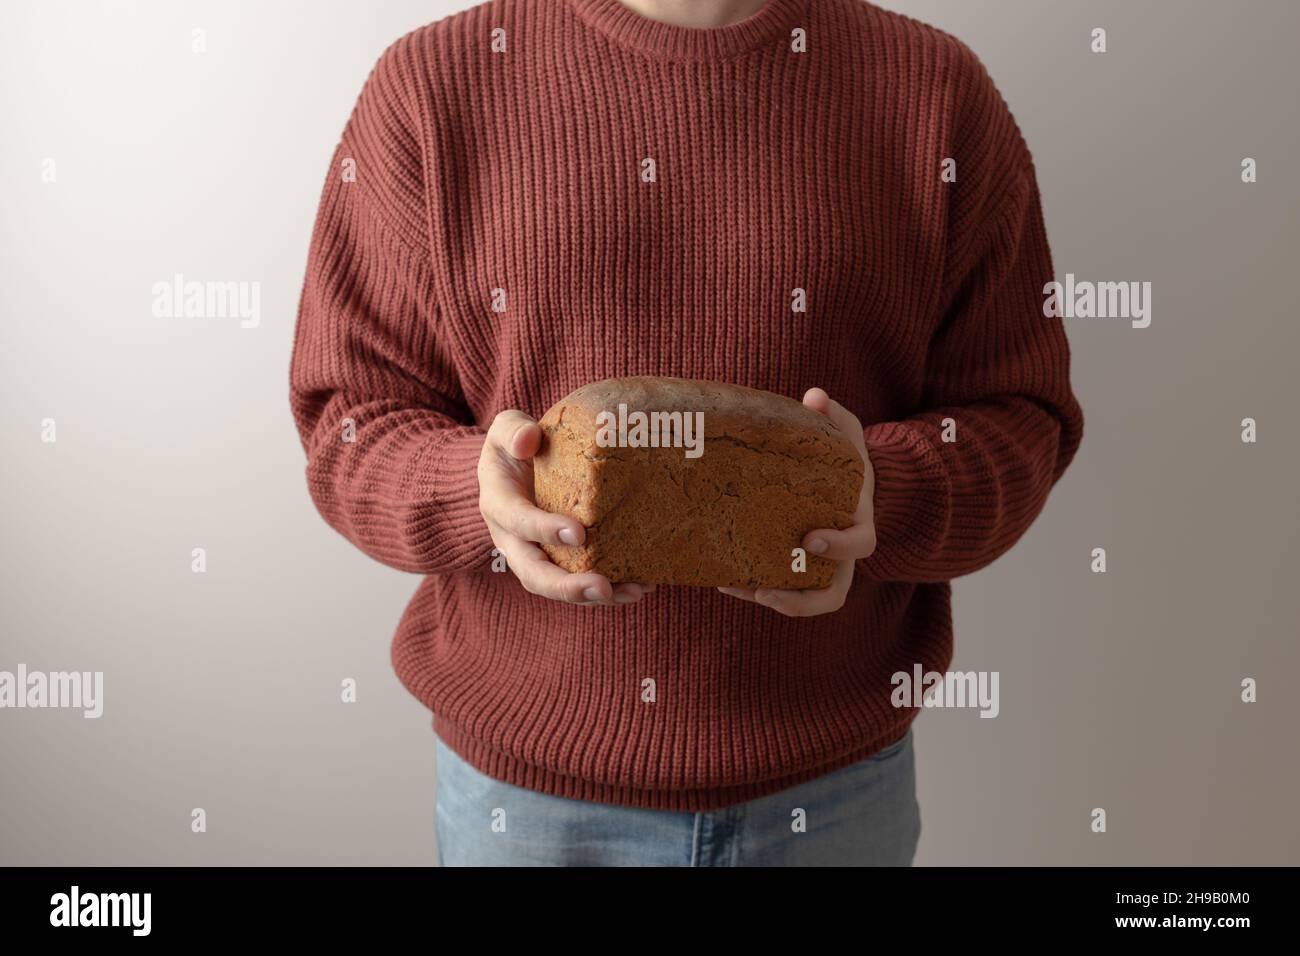 Un hombre en un suéter tiene una barra de pan de centeno casero. Vista frontal. Foto de stock